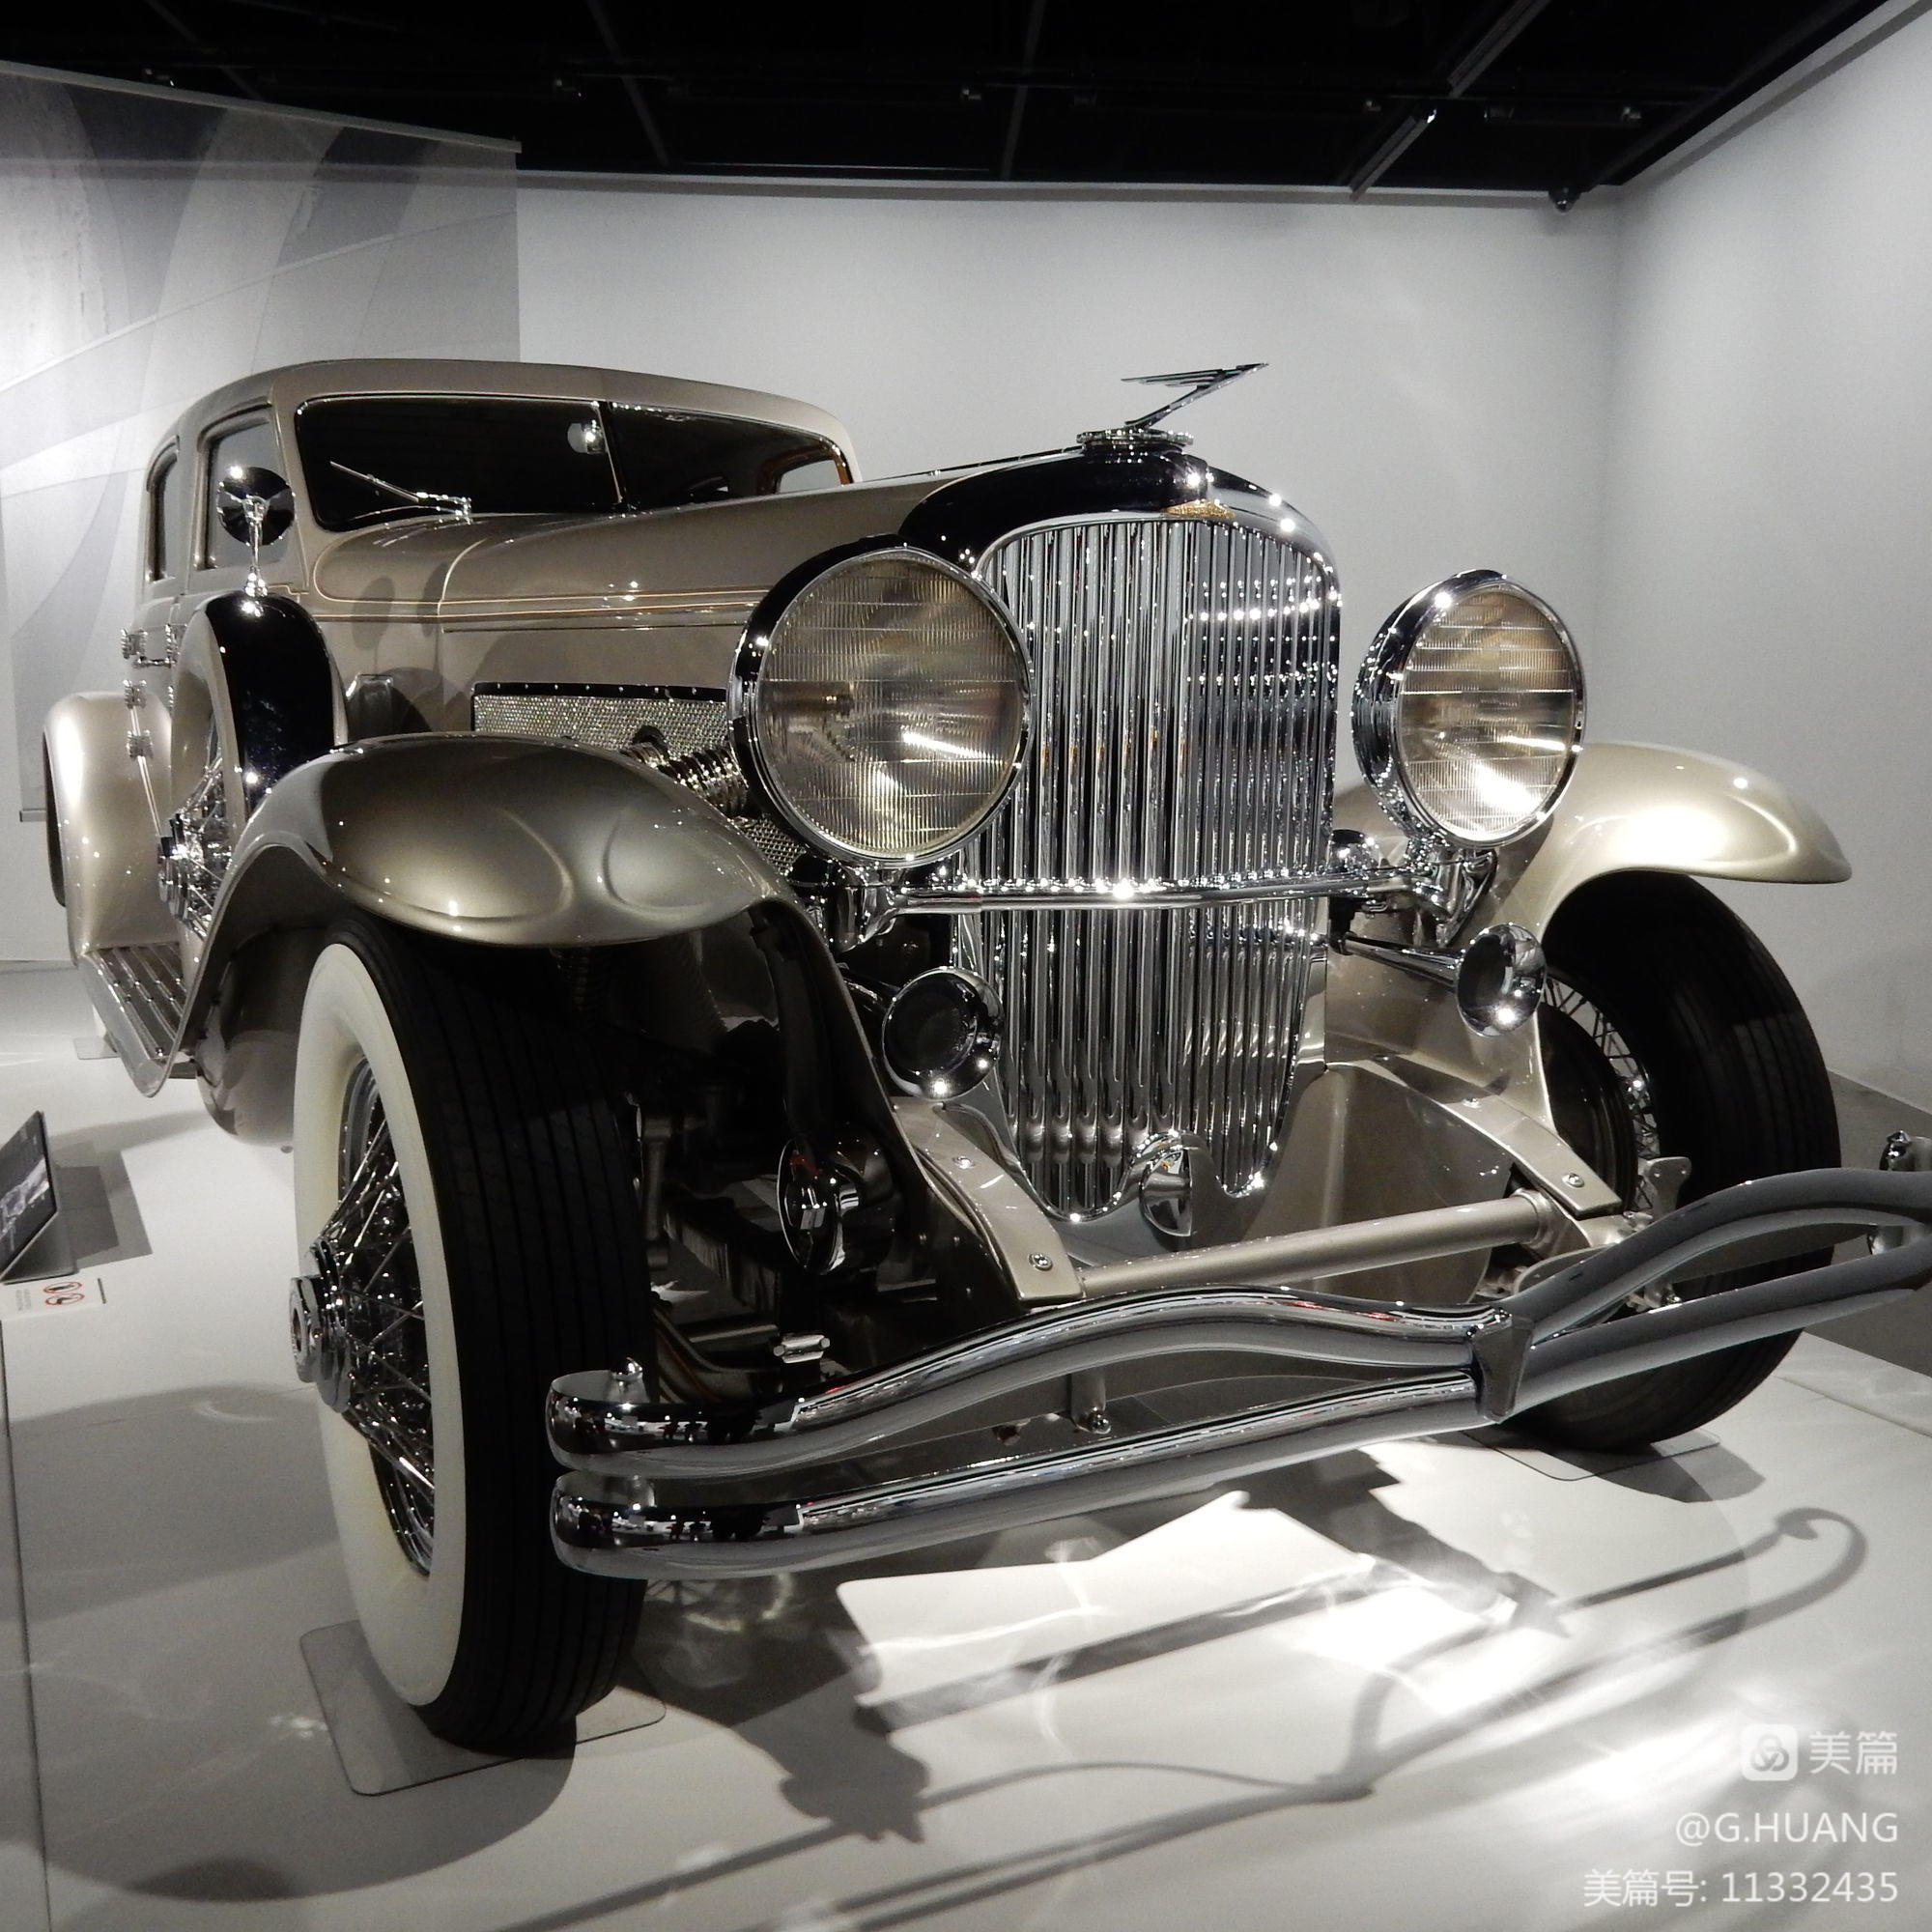 彼德森汽车博物馆图片